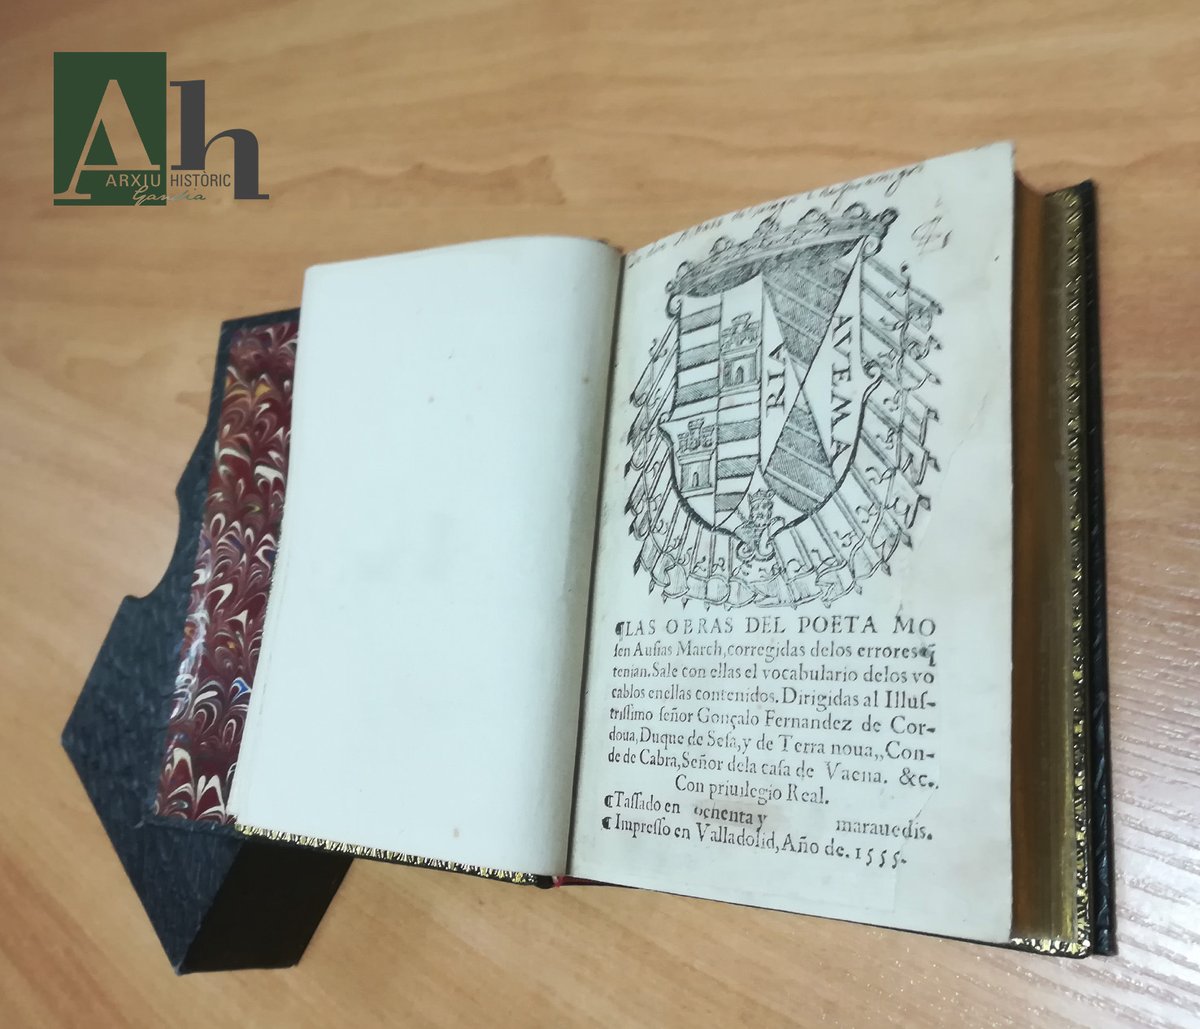 Hui #3deMarch volem sumar-nos als actes d’homenatge a Ausiàs Marc mostrant-vos una de les joies de la nostra #BibliotecaHistòrica, aquesta edició castellana de la seua obra publicada en Valladolid el 1555. Podeu consultar-la venint a: @ArxiuGandia